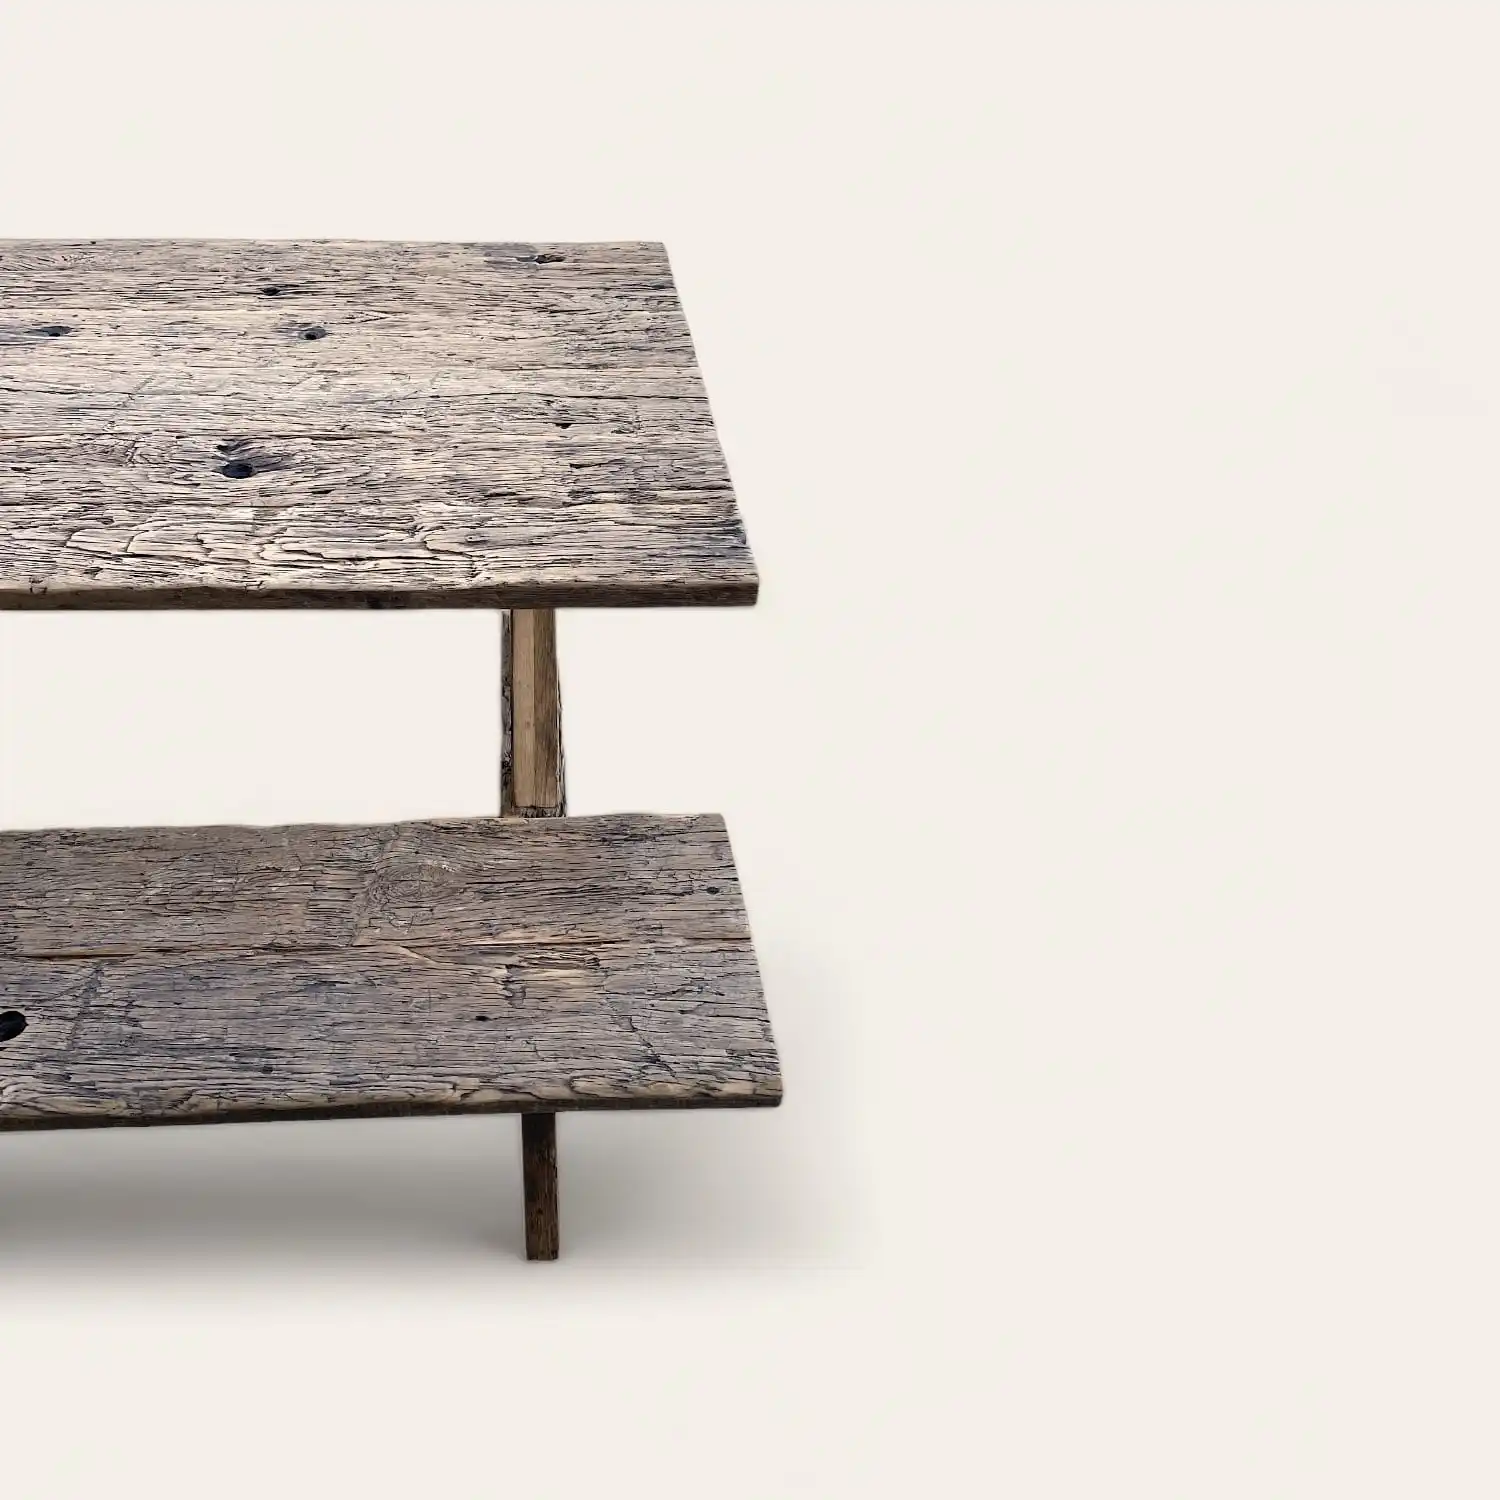  Une vieille table basse rustique en bois avec deux étagères. 